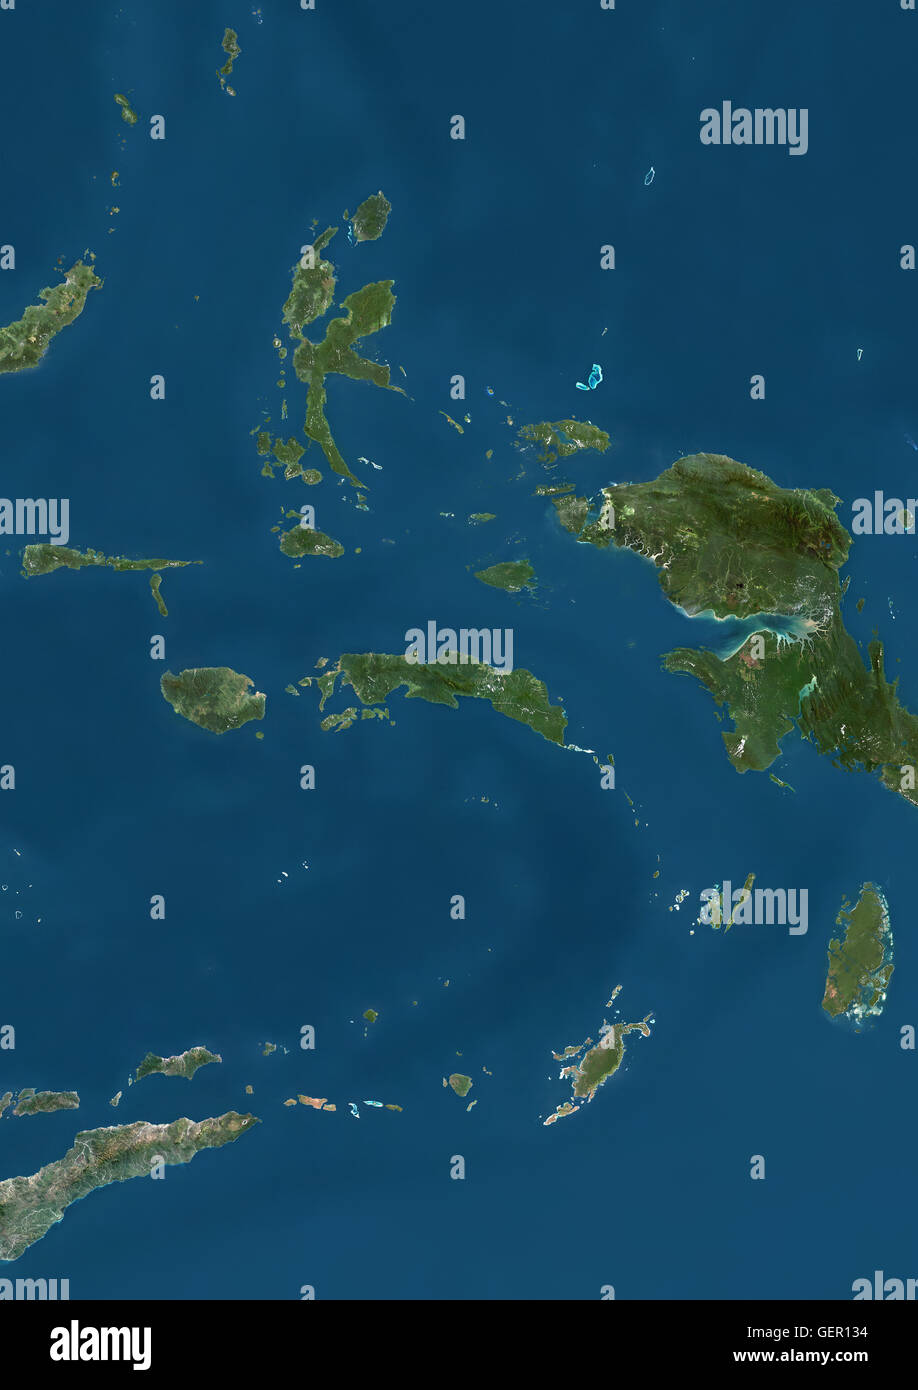 Satellitenansicht von den Molukken, Indonesien. Dieses Bild wurde aus Daten von Landsat-Satelliten erworben erstellt. Stockfoto